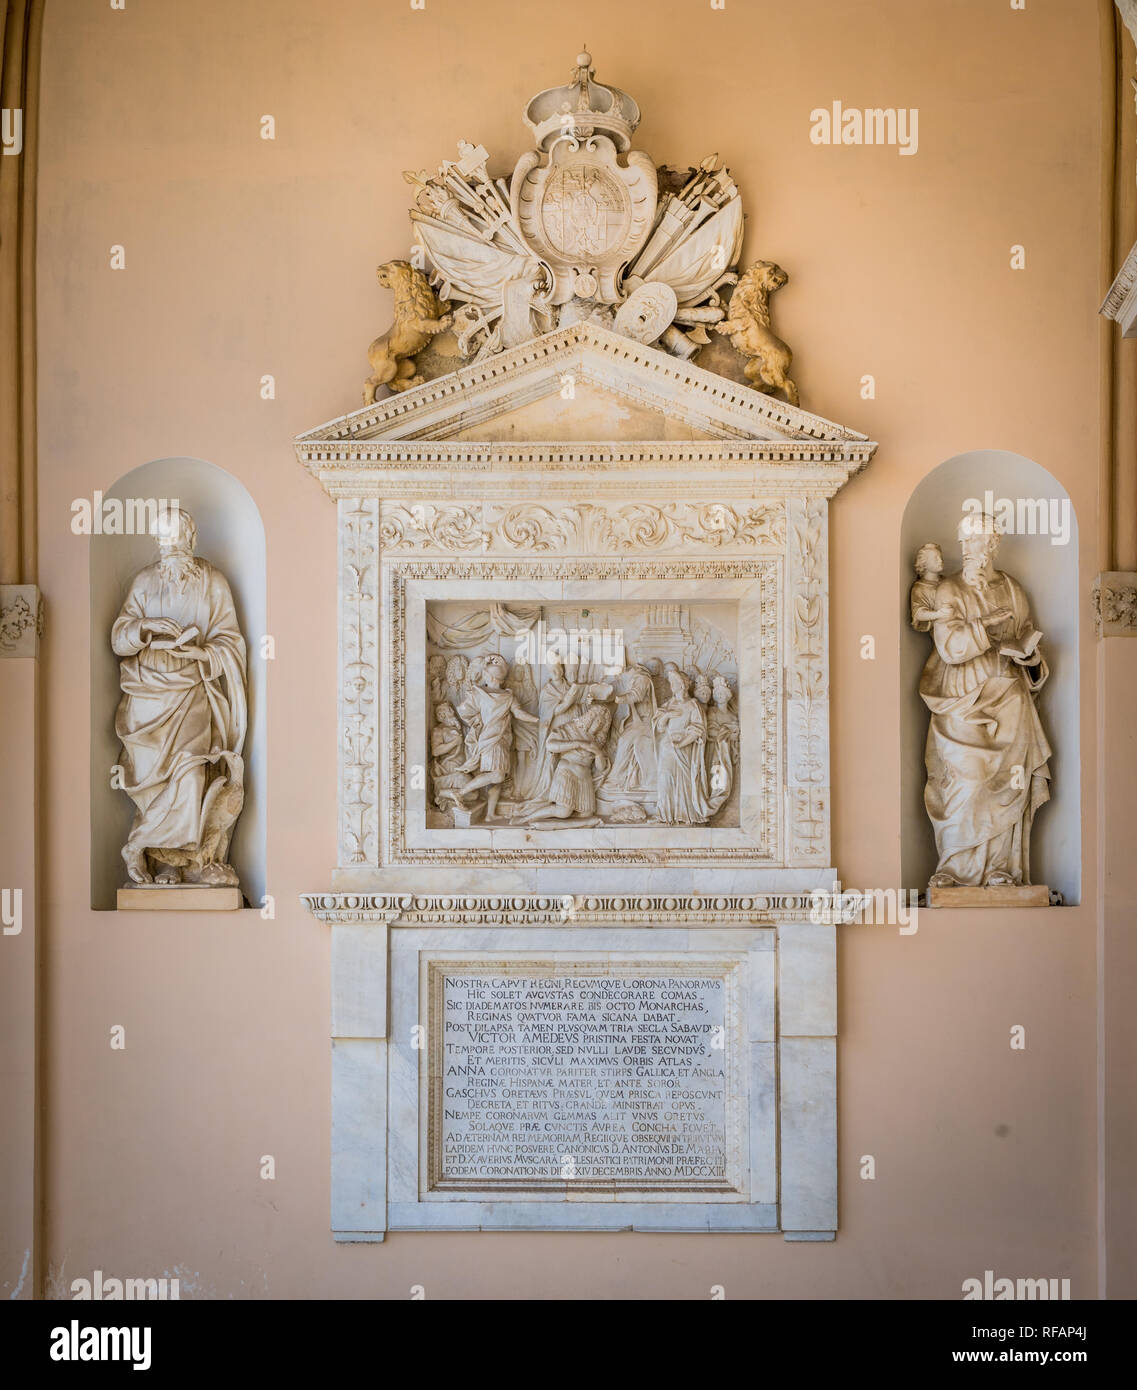 Bas-relief avec le couronnement de Vittorio Amedeo II de Savoie dans le portique de la cathédrale de Palerme. Sicile, Italie Banque D'Images